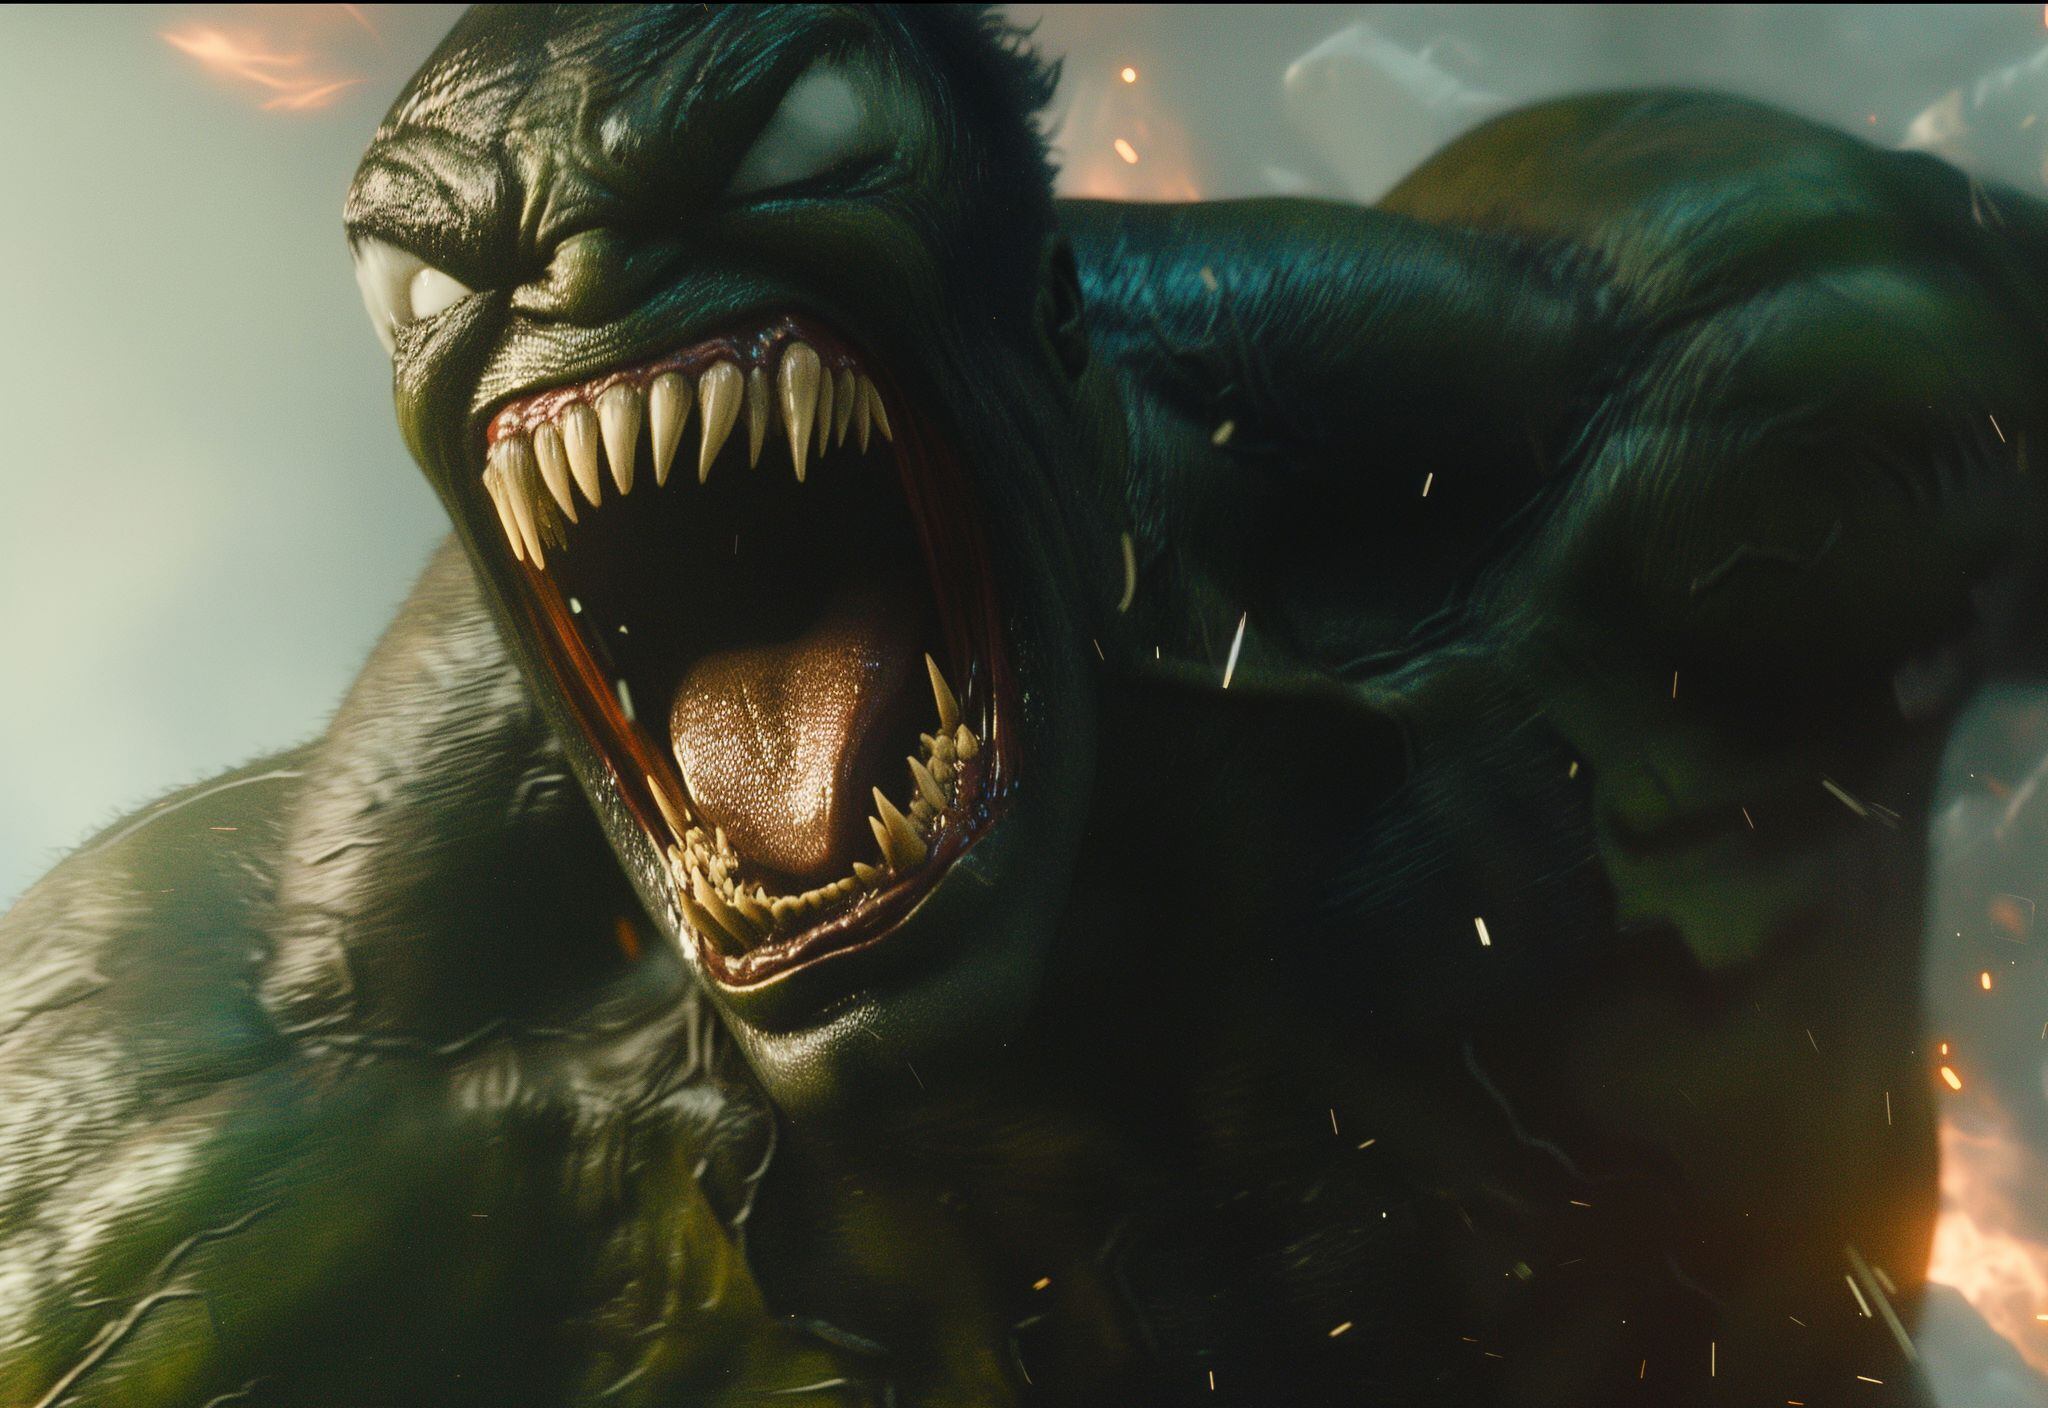 En los cómics, Hulk ha levantado el martillo de Thor en varias ocasiones, demostrando ser "digno" de manejar el Mjolnir. Además, Venom también ha tenido momentos en los que ha utilizado el simbionte para crear diversas formas, una de las cuales fue una versión de Hulk con habilidades simbióticas.